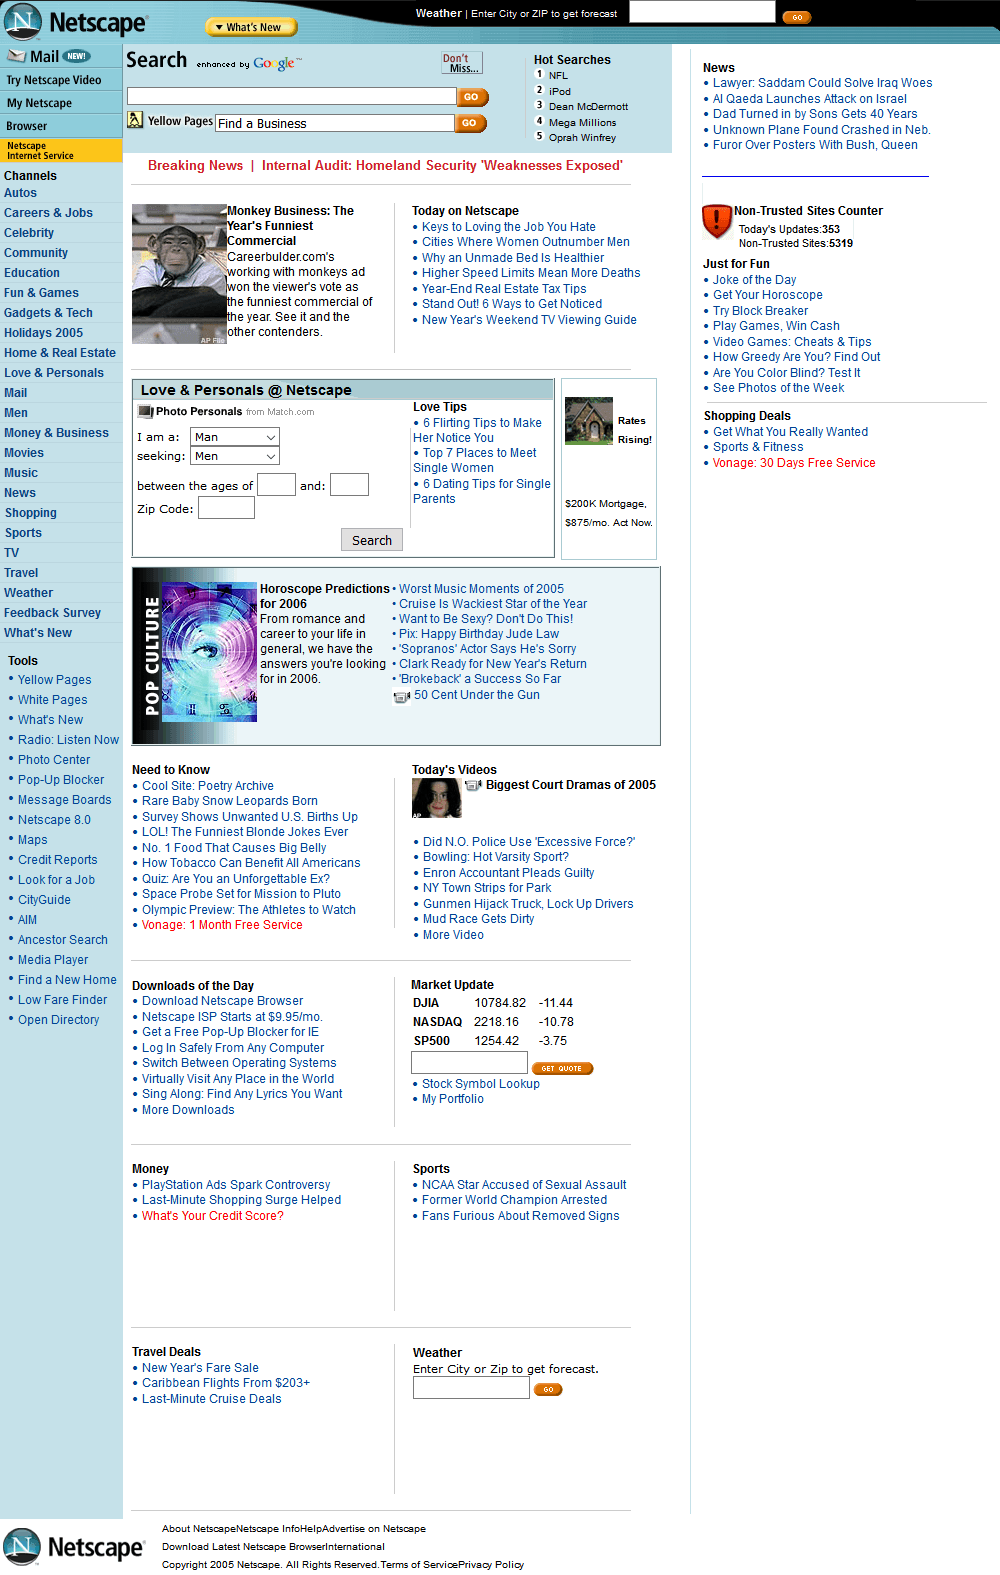 Netscape in 2005